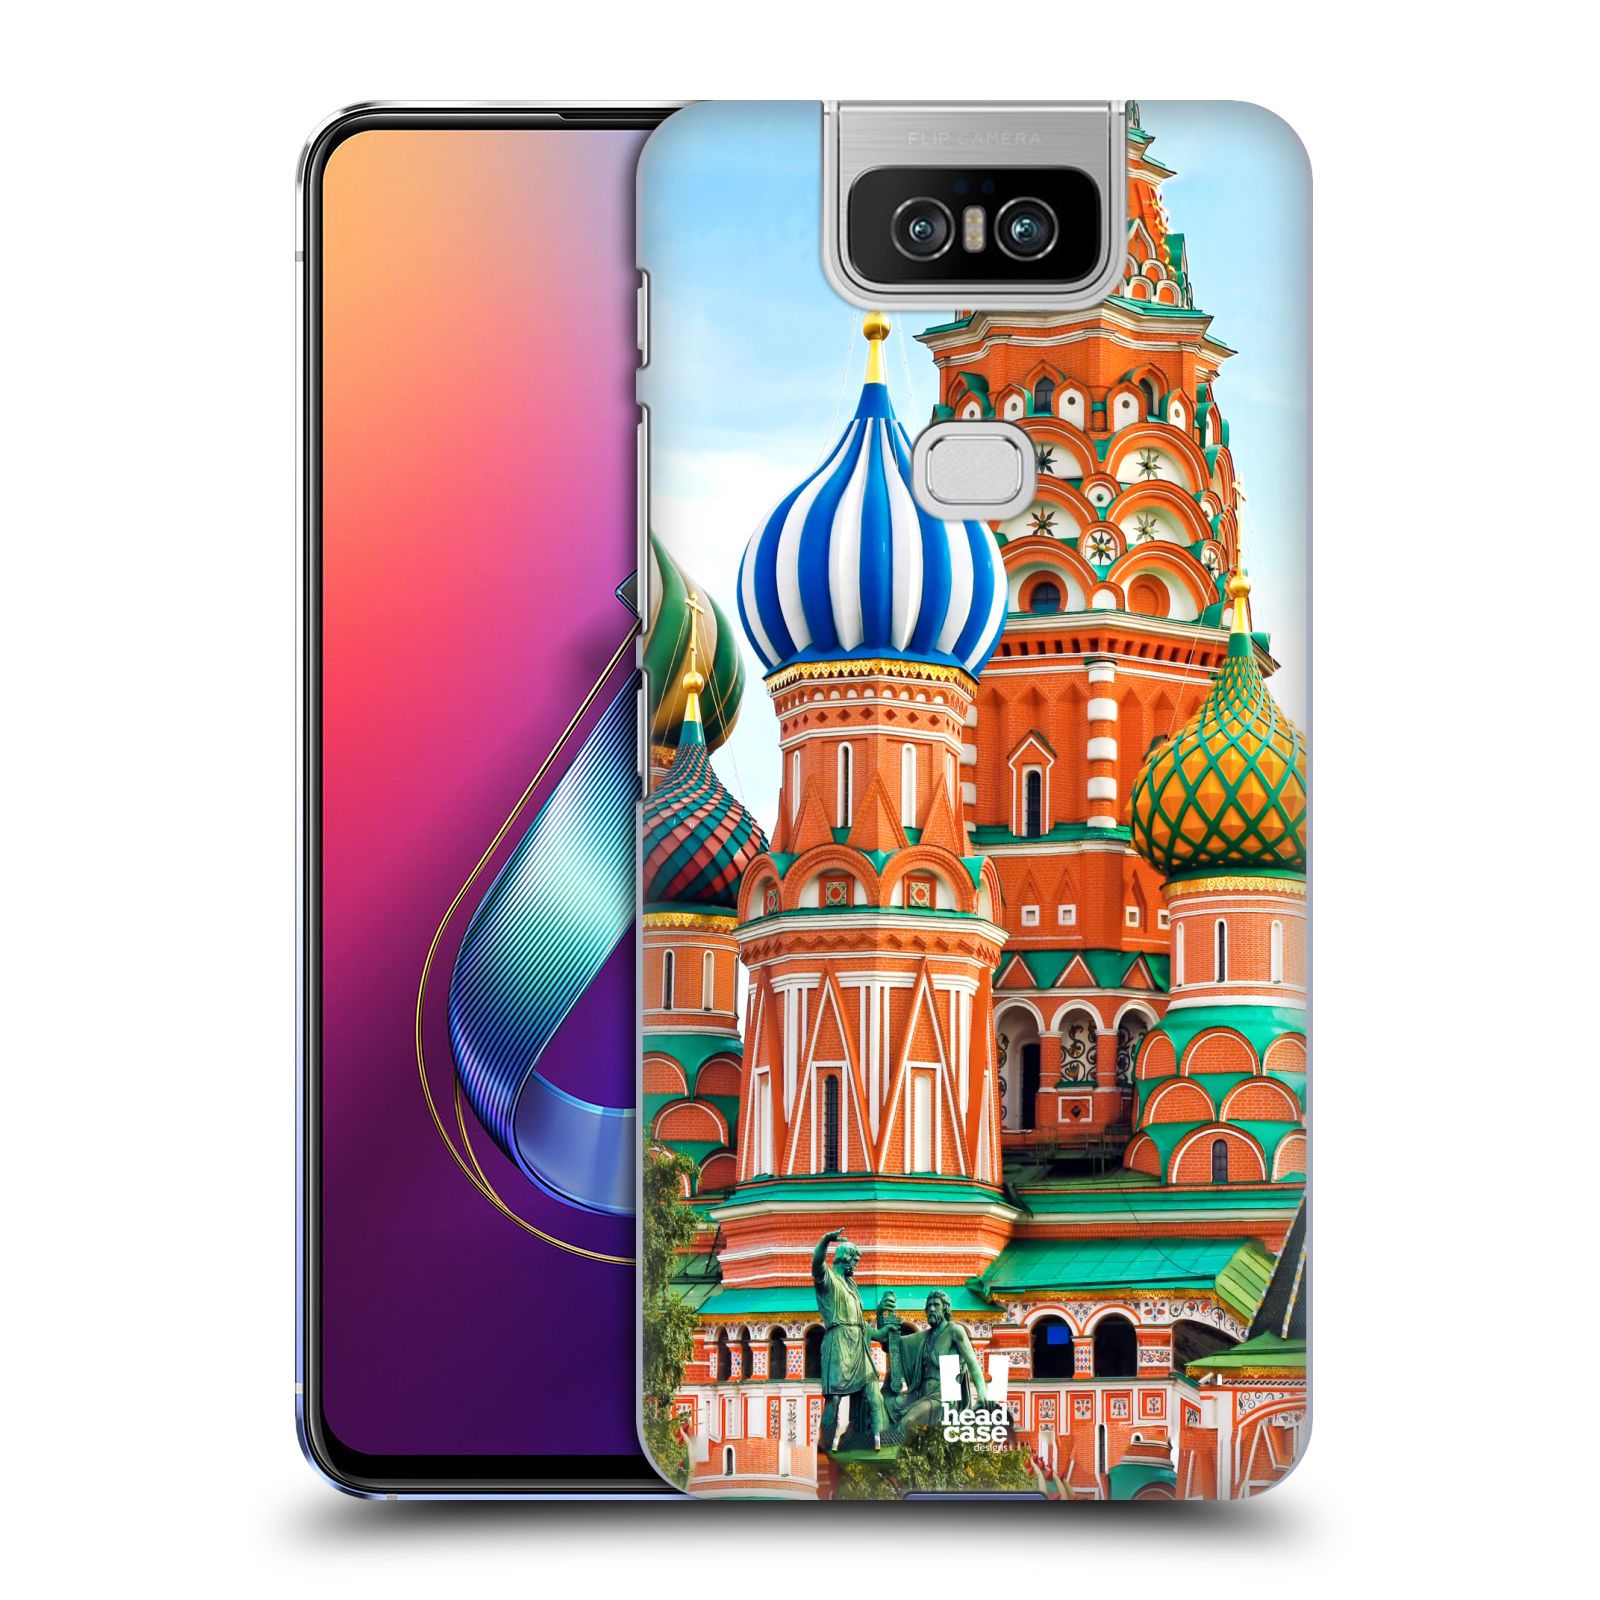 Pouzdro na mobil Asus Zenfone 6 ZS630KL - HEAD CASE - vzor Města foto náměstí RUSKO,MOSKVA, RUDÉ NÁMĚSTÍ